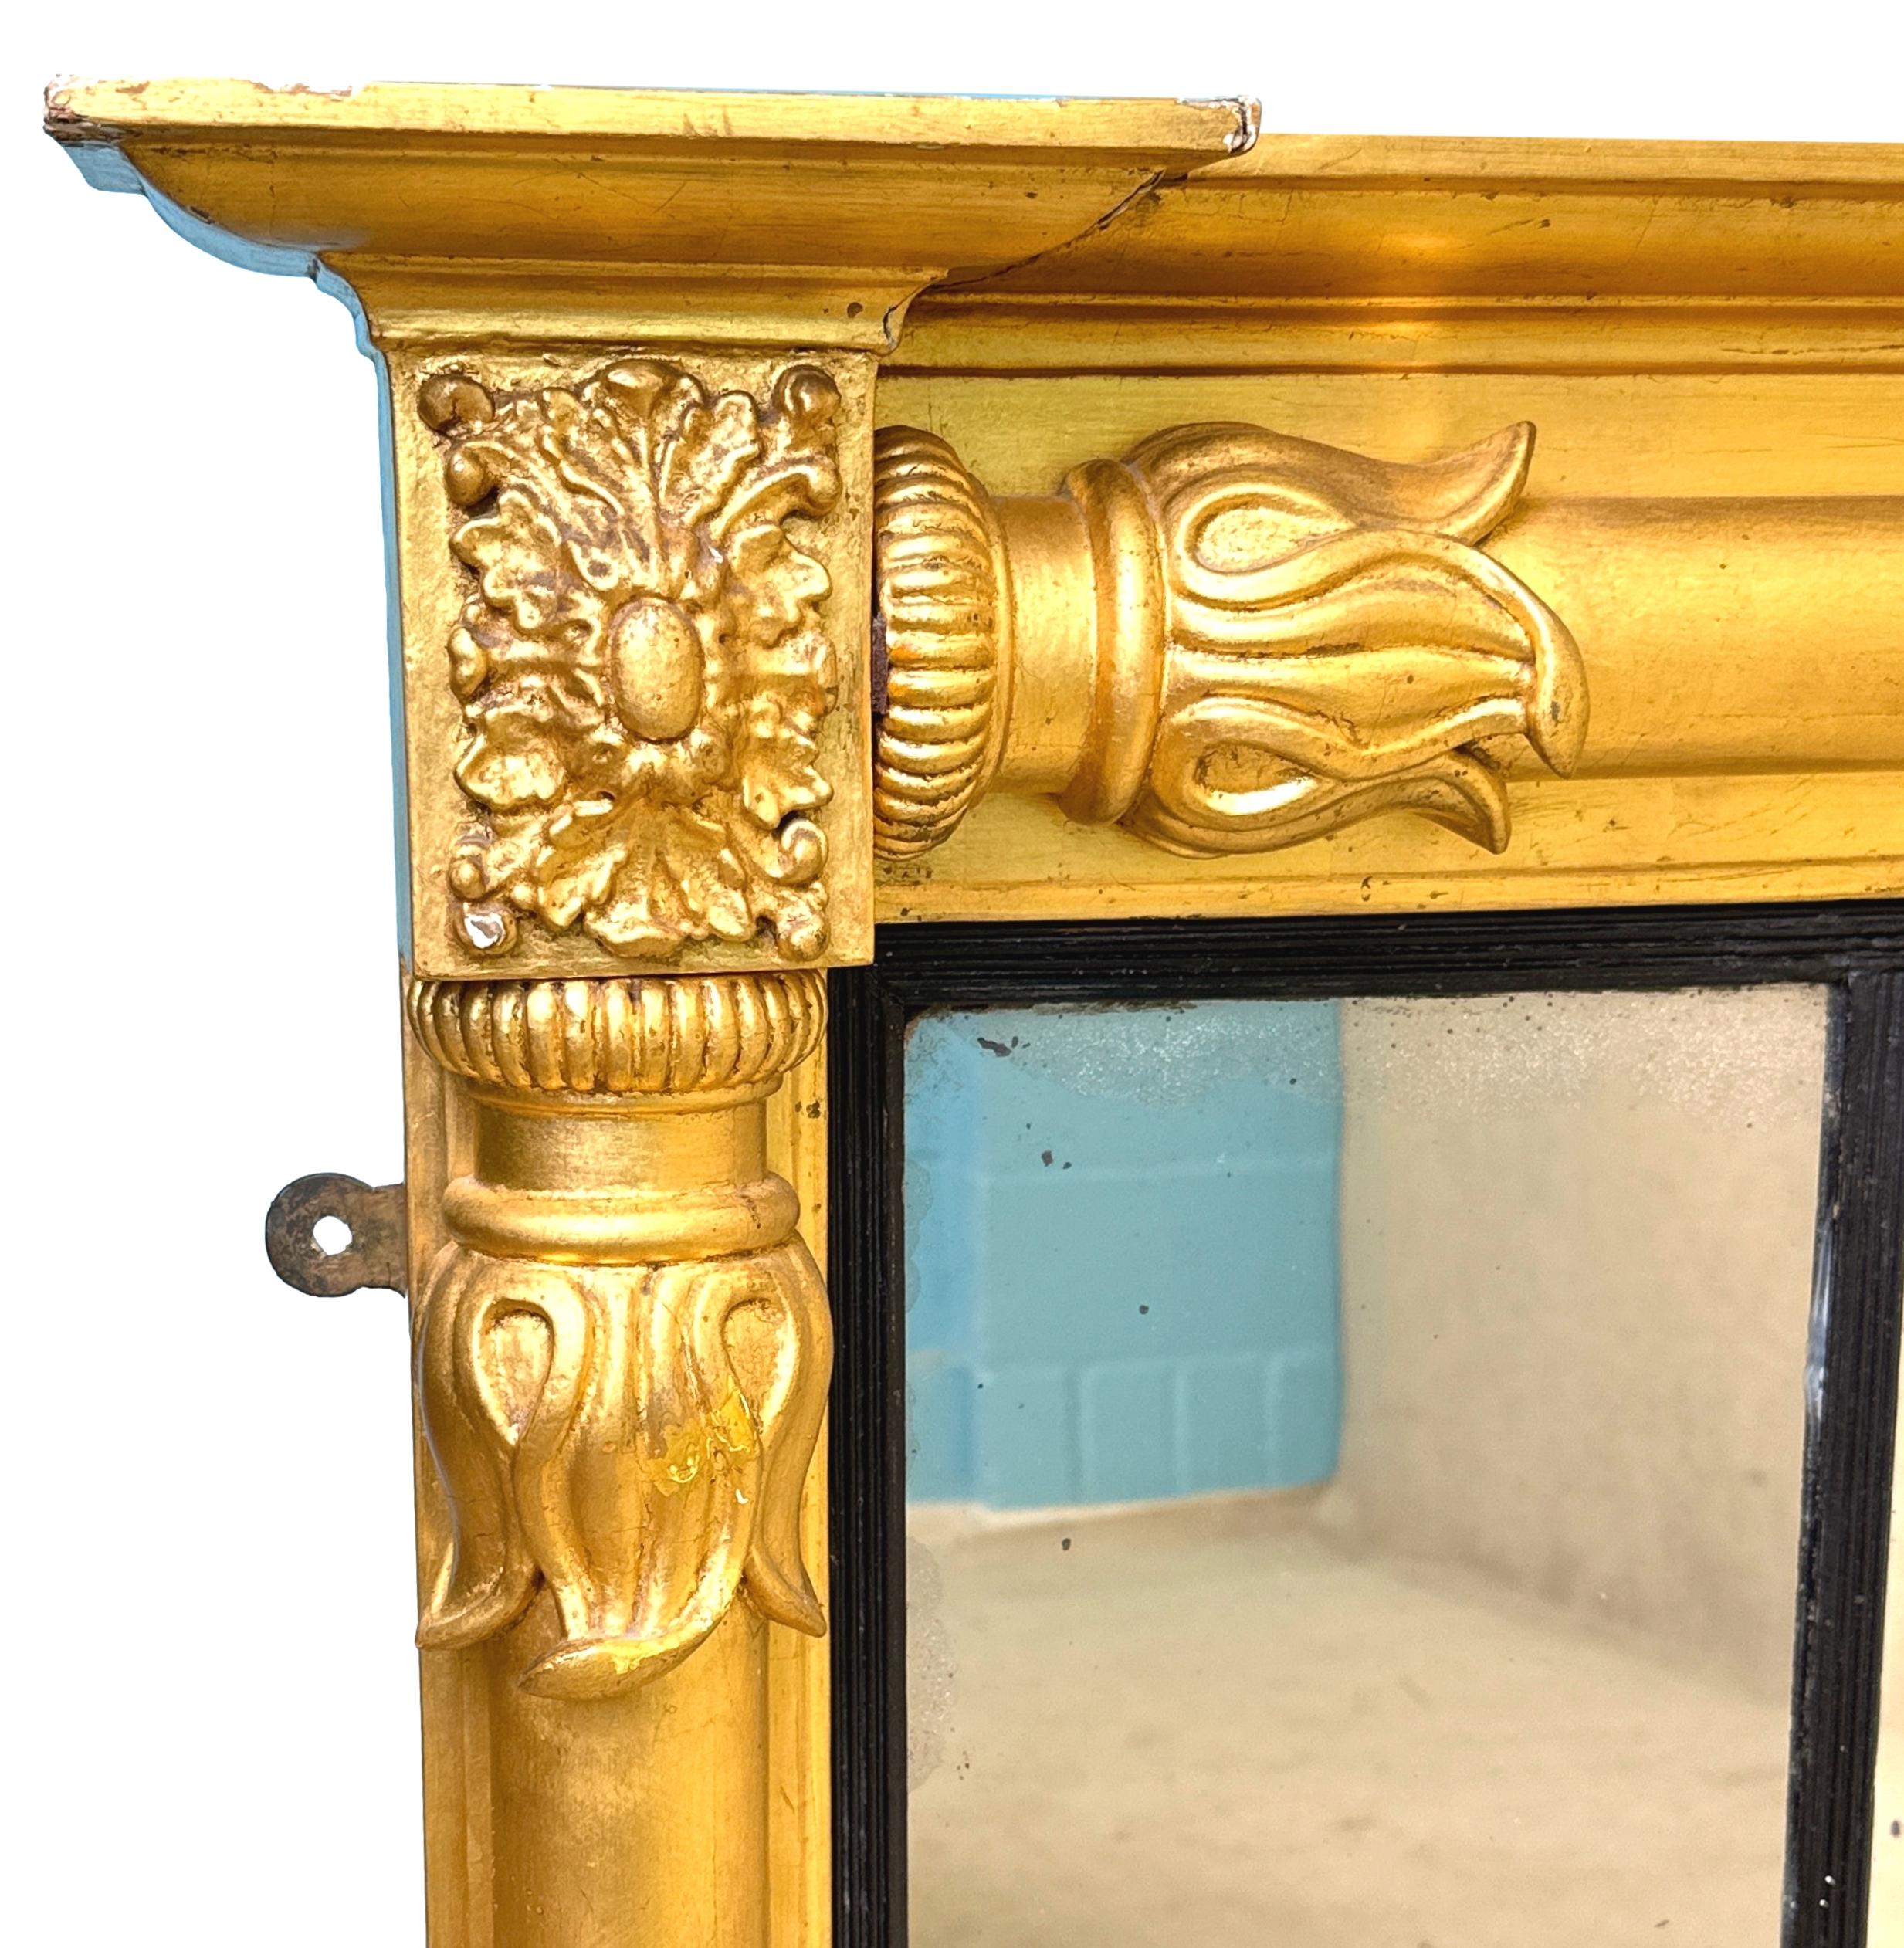 Eine reizvolle 19. Jahrhundert Regency-Periode vergoldet und Gesso overmantle Spiegel mit dreifach geteilten Spiegelplatte durch elegante Hälfte gedreht Säulen und Lotusblatt geschnitzt Dekoration begrenzt.

Wie der Name schon andeutet, wurden